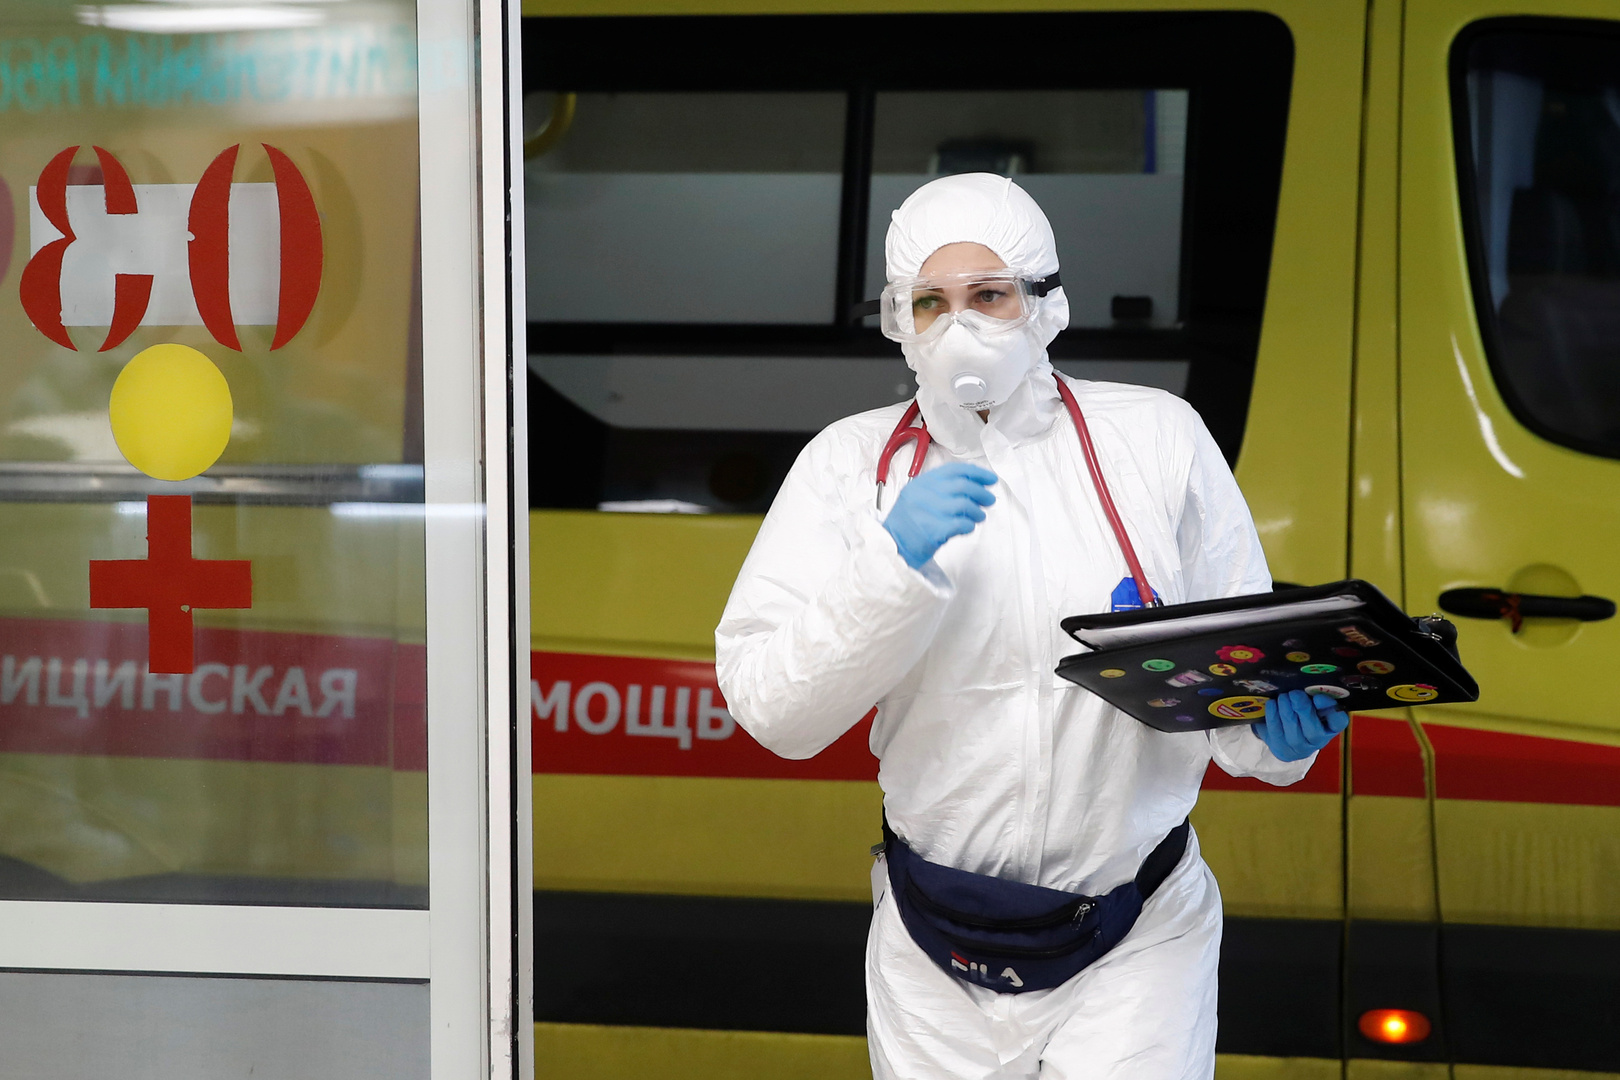 تراجع الإصابات بفيروس كورونا في روسيا وتسجيل أقل حصيلة يومية منذ نوفمبر الماضي